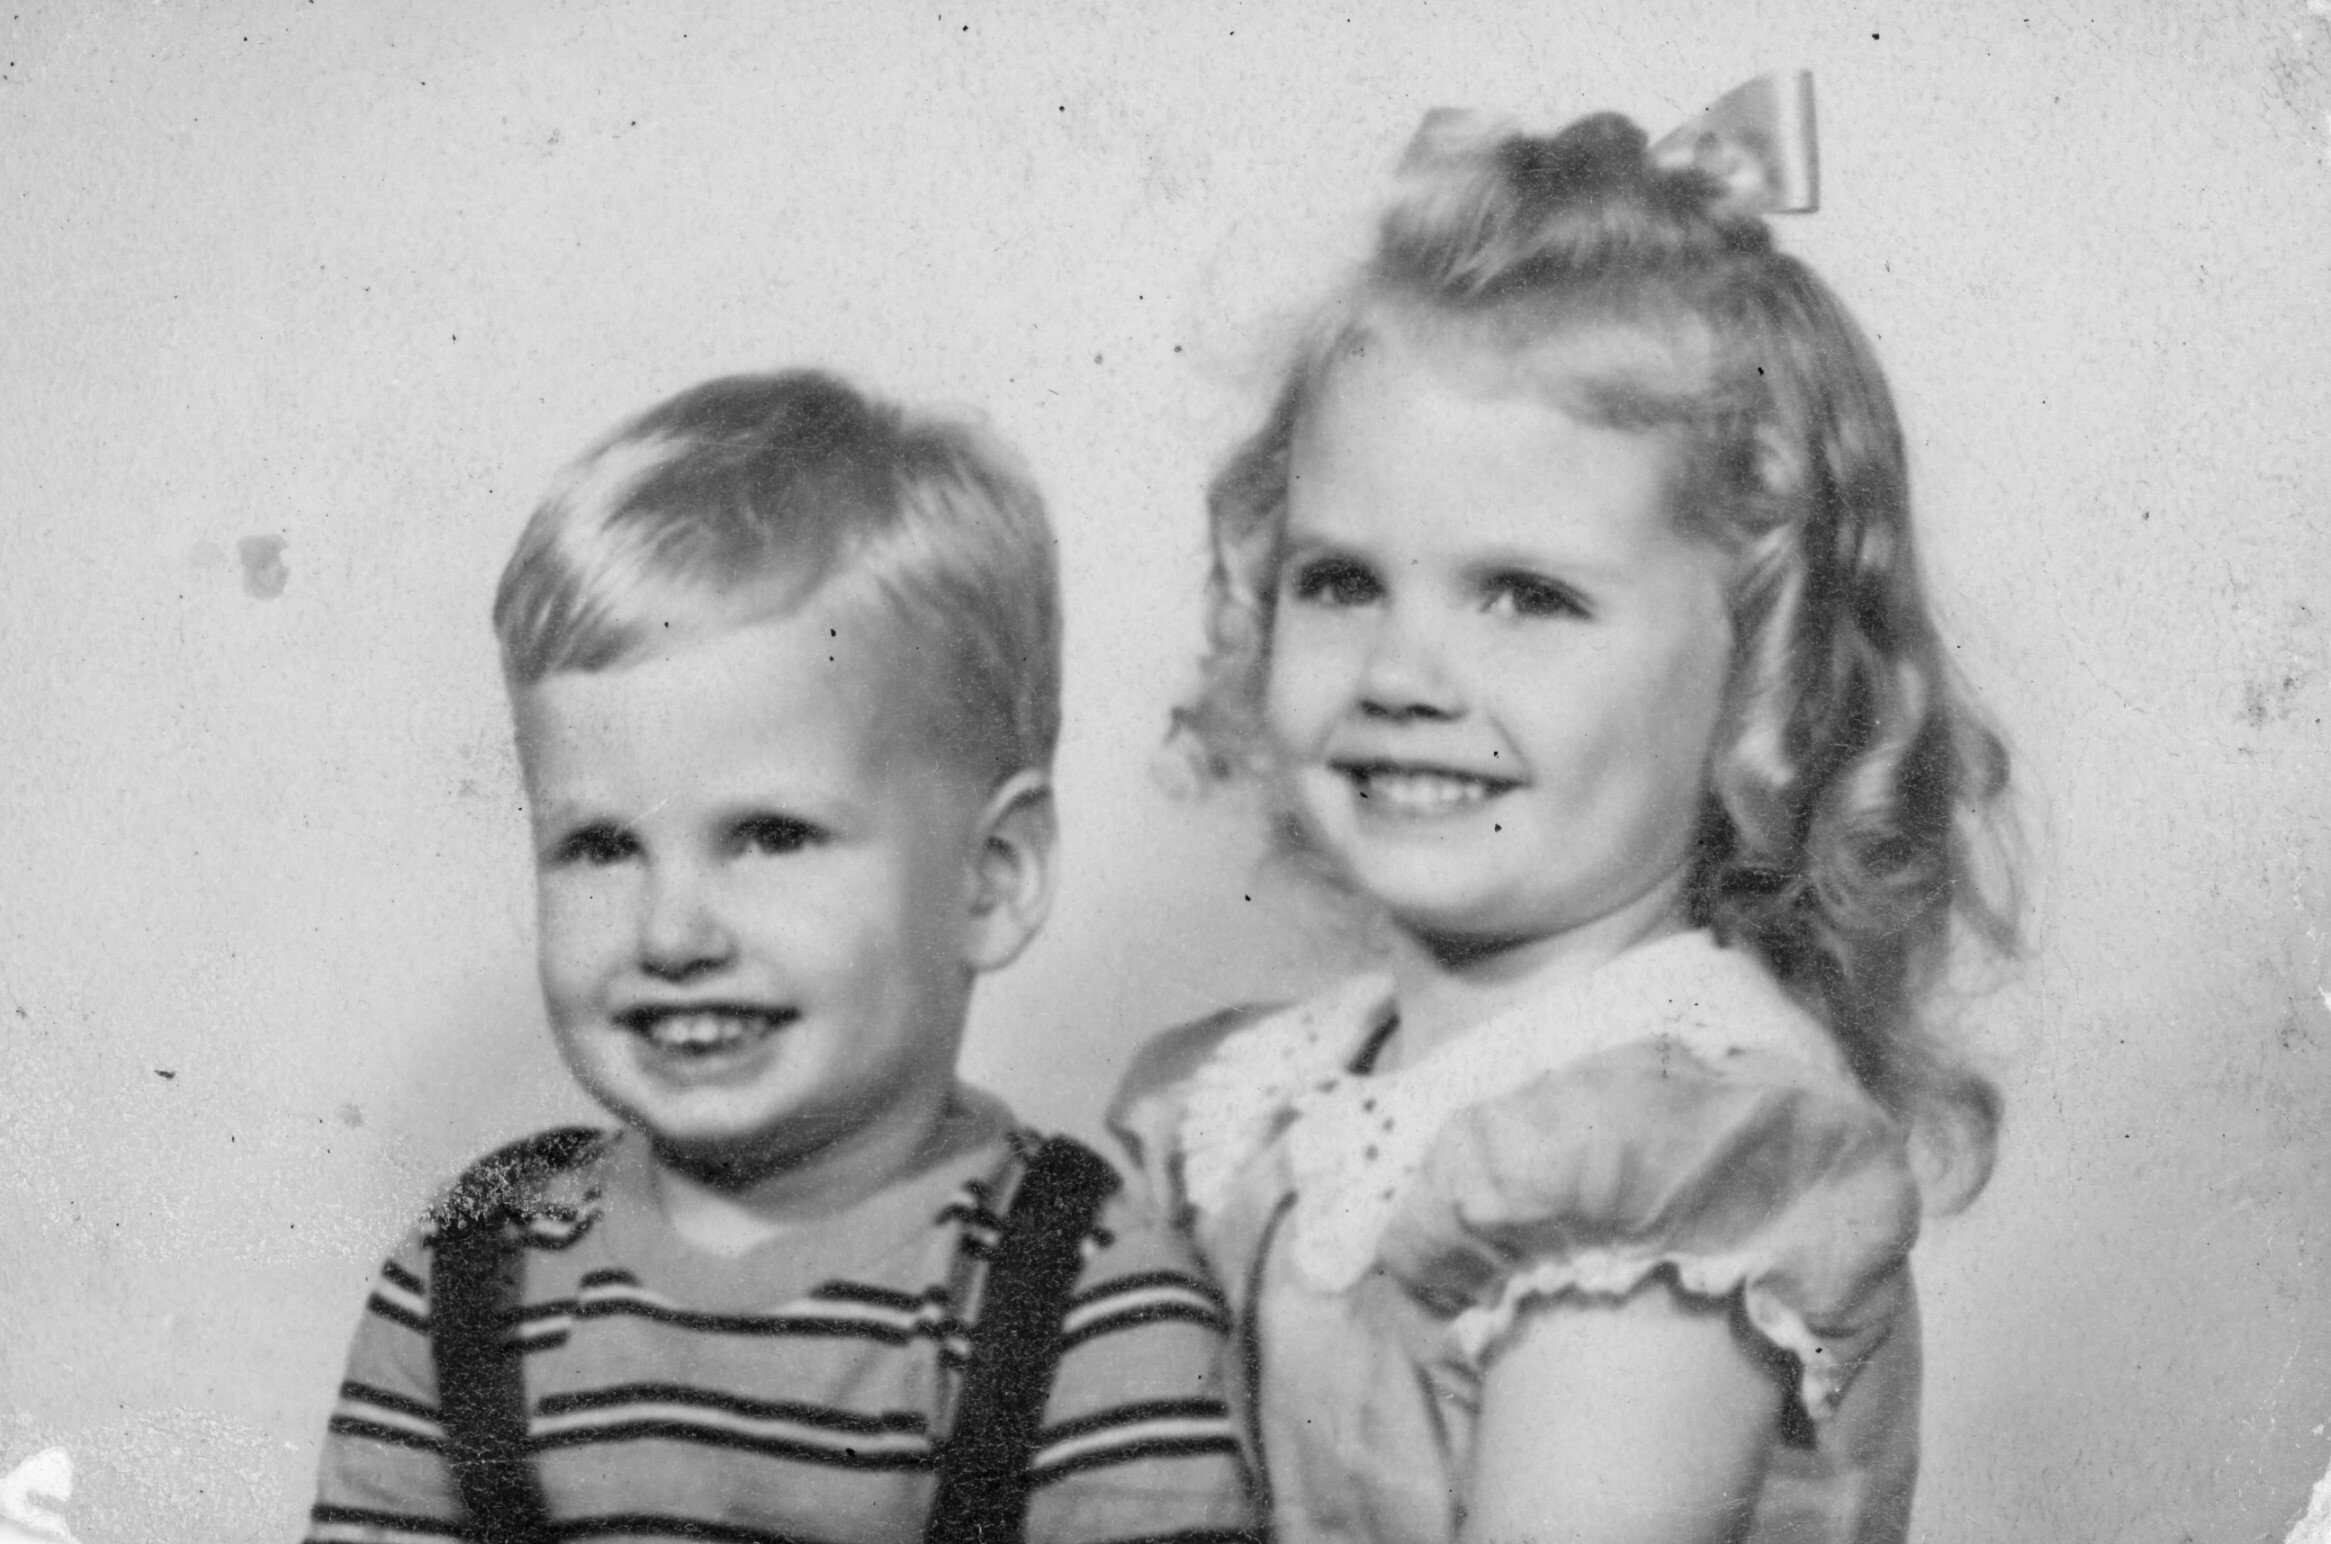 Joe and Patsy Chadwick, children of Donald and Anne Chadwick